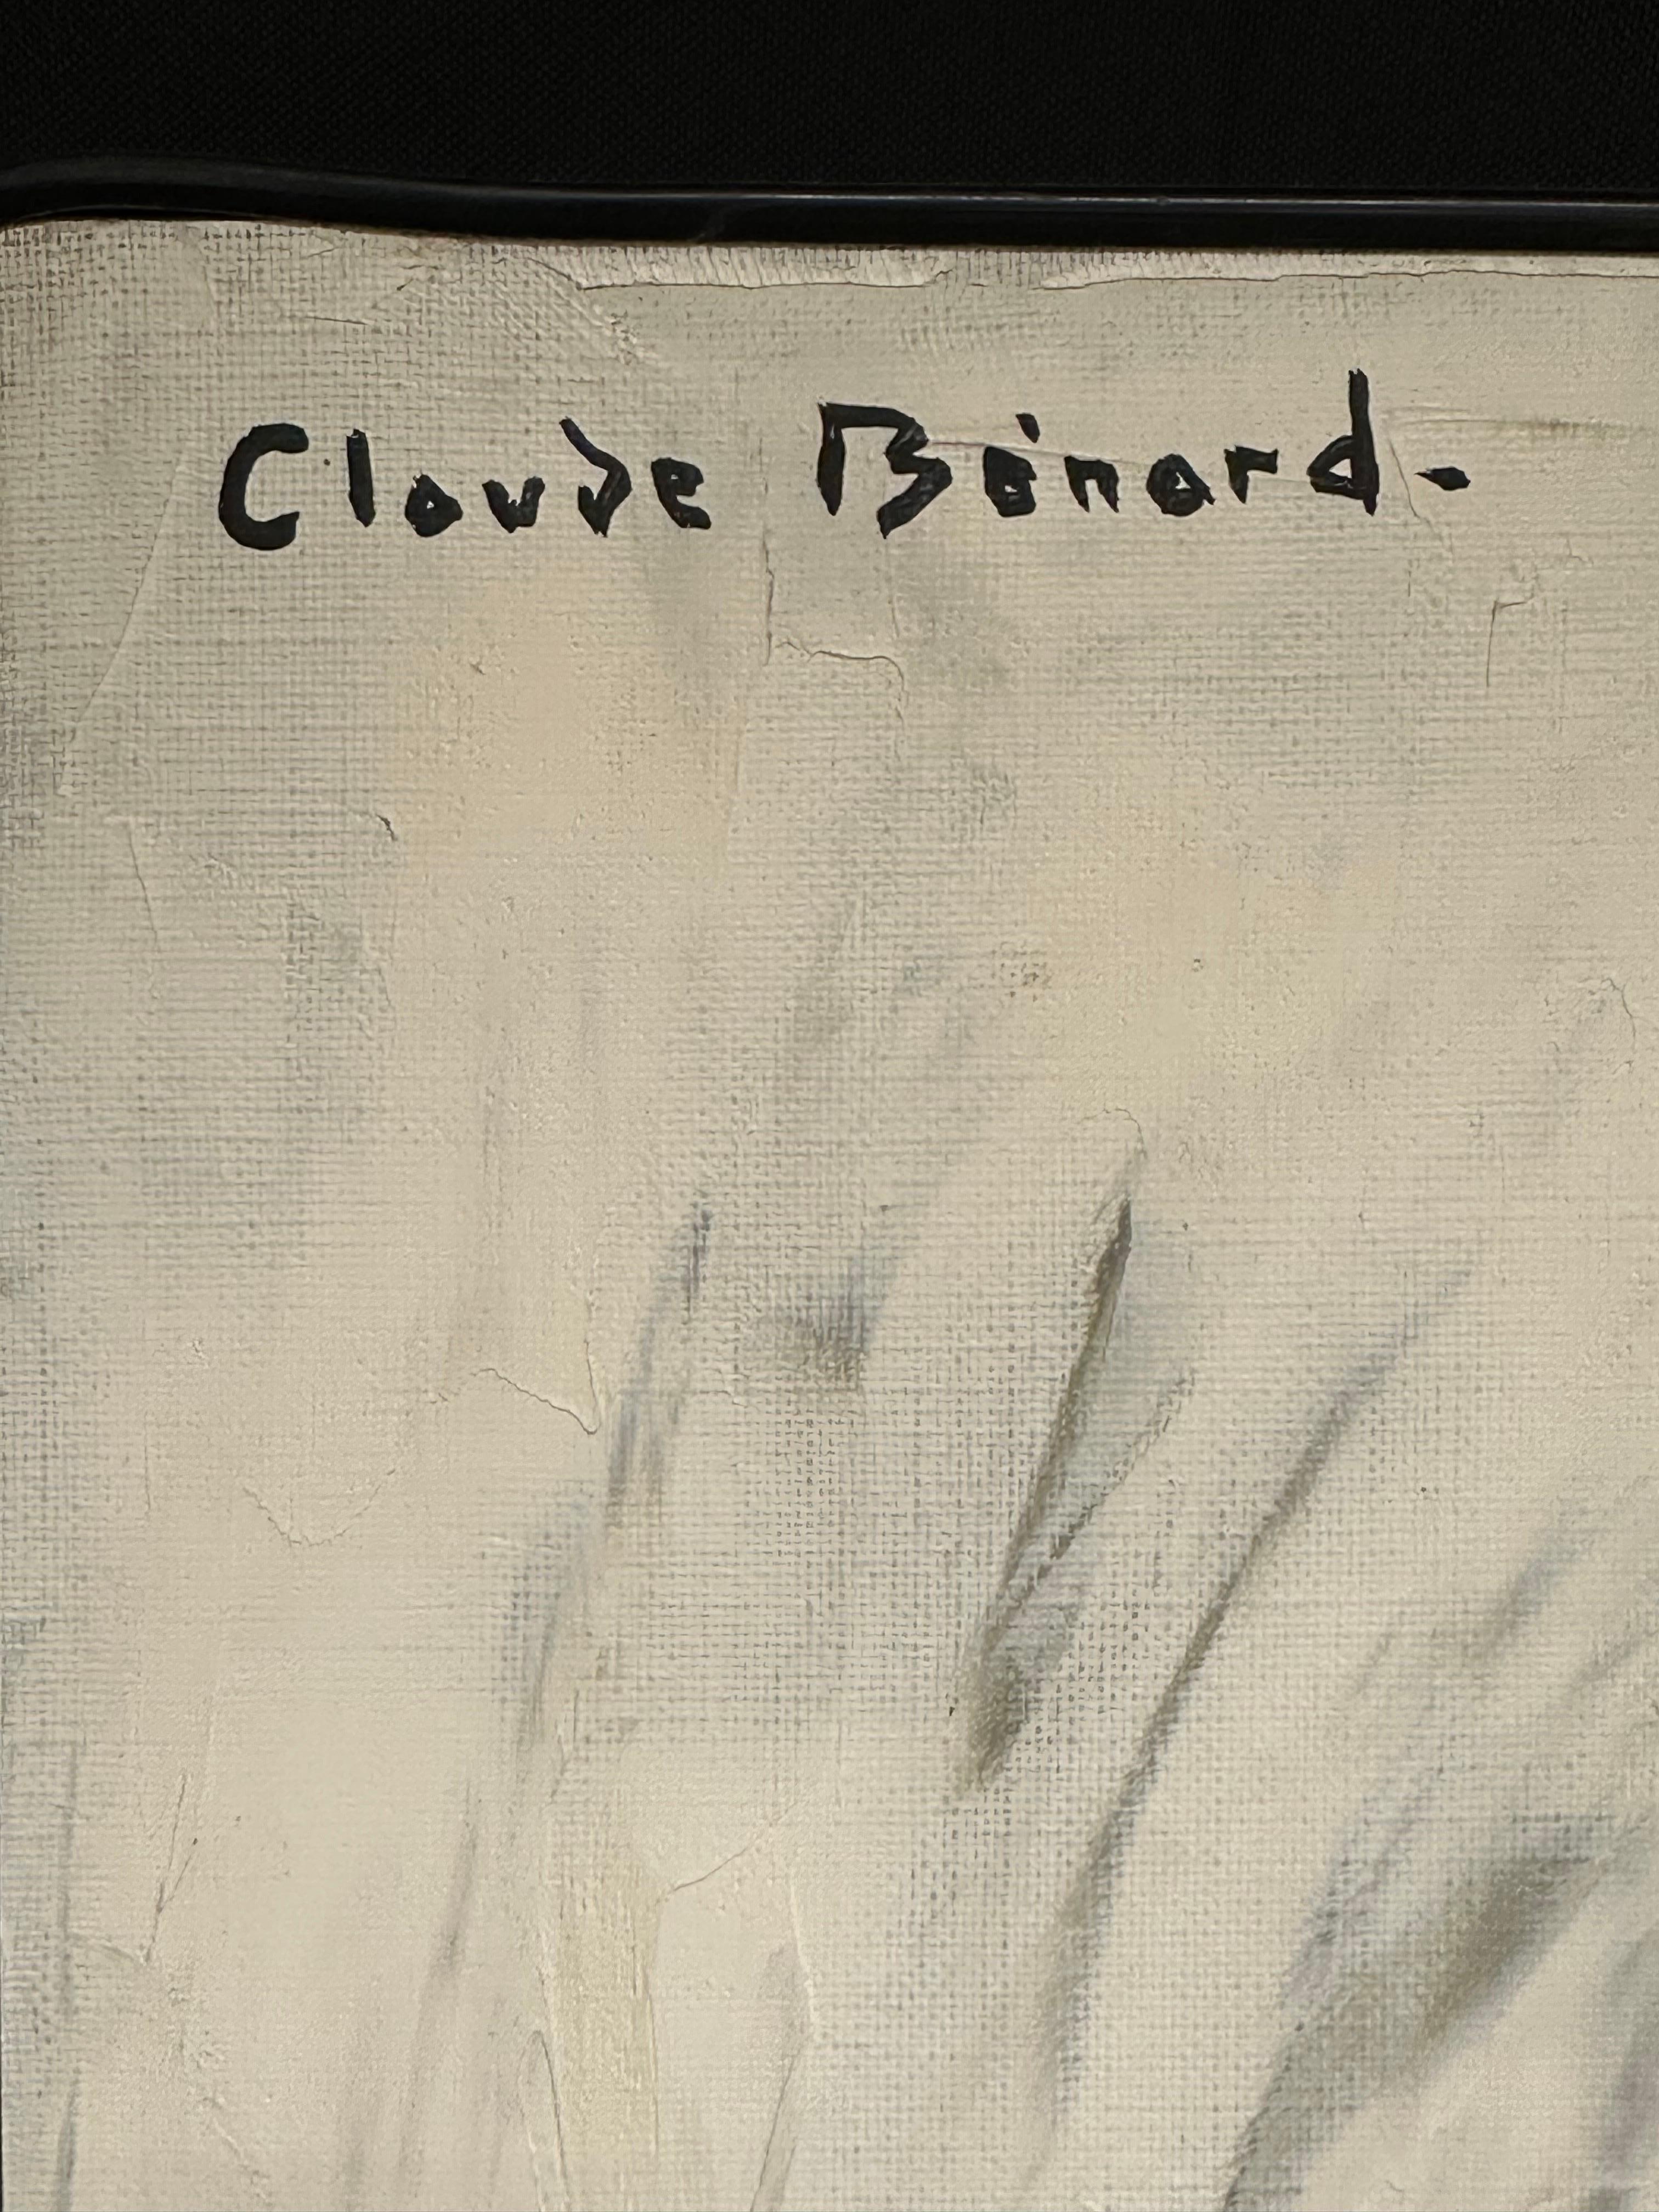 Claude Benard (1926-2016, français), signé
Portrait d'une jeune femme à la mode
peinture à l'huile sur toile, non encadrée, signée dans le coin supérieur
peinture : 32 x 24 pouces
provenance : succession de l'artiste, France
état : globalement très